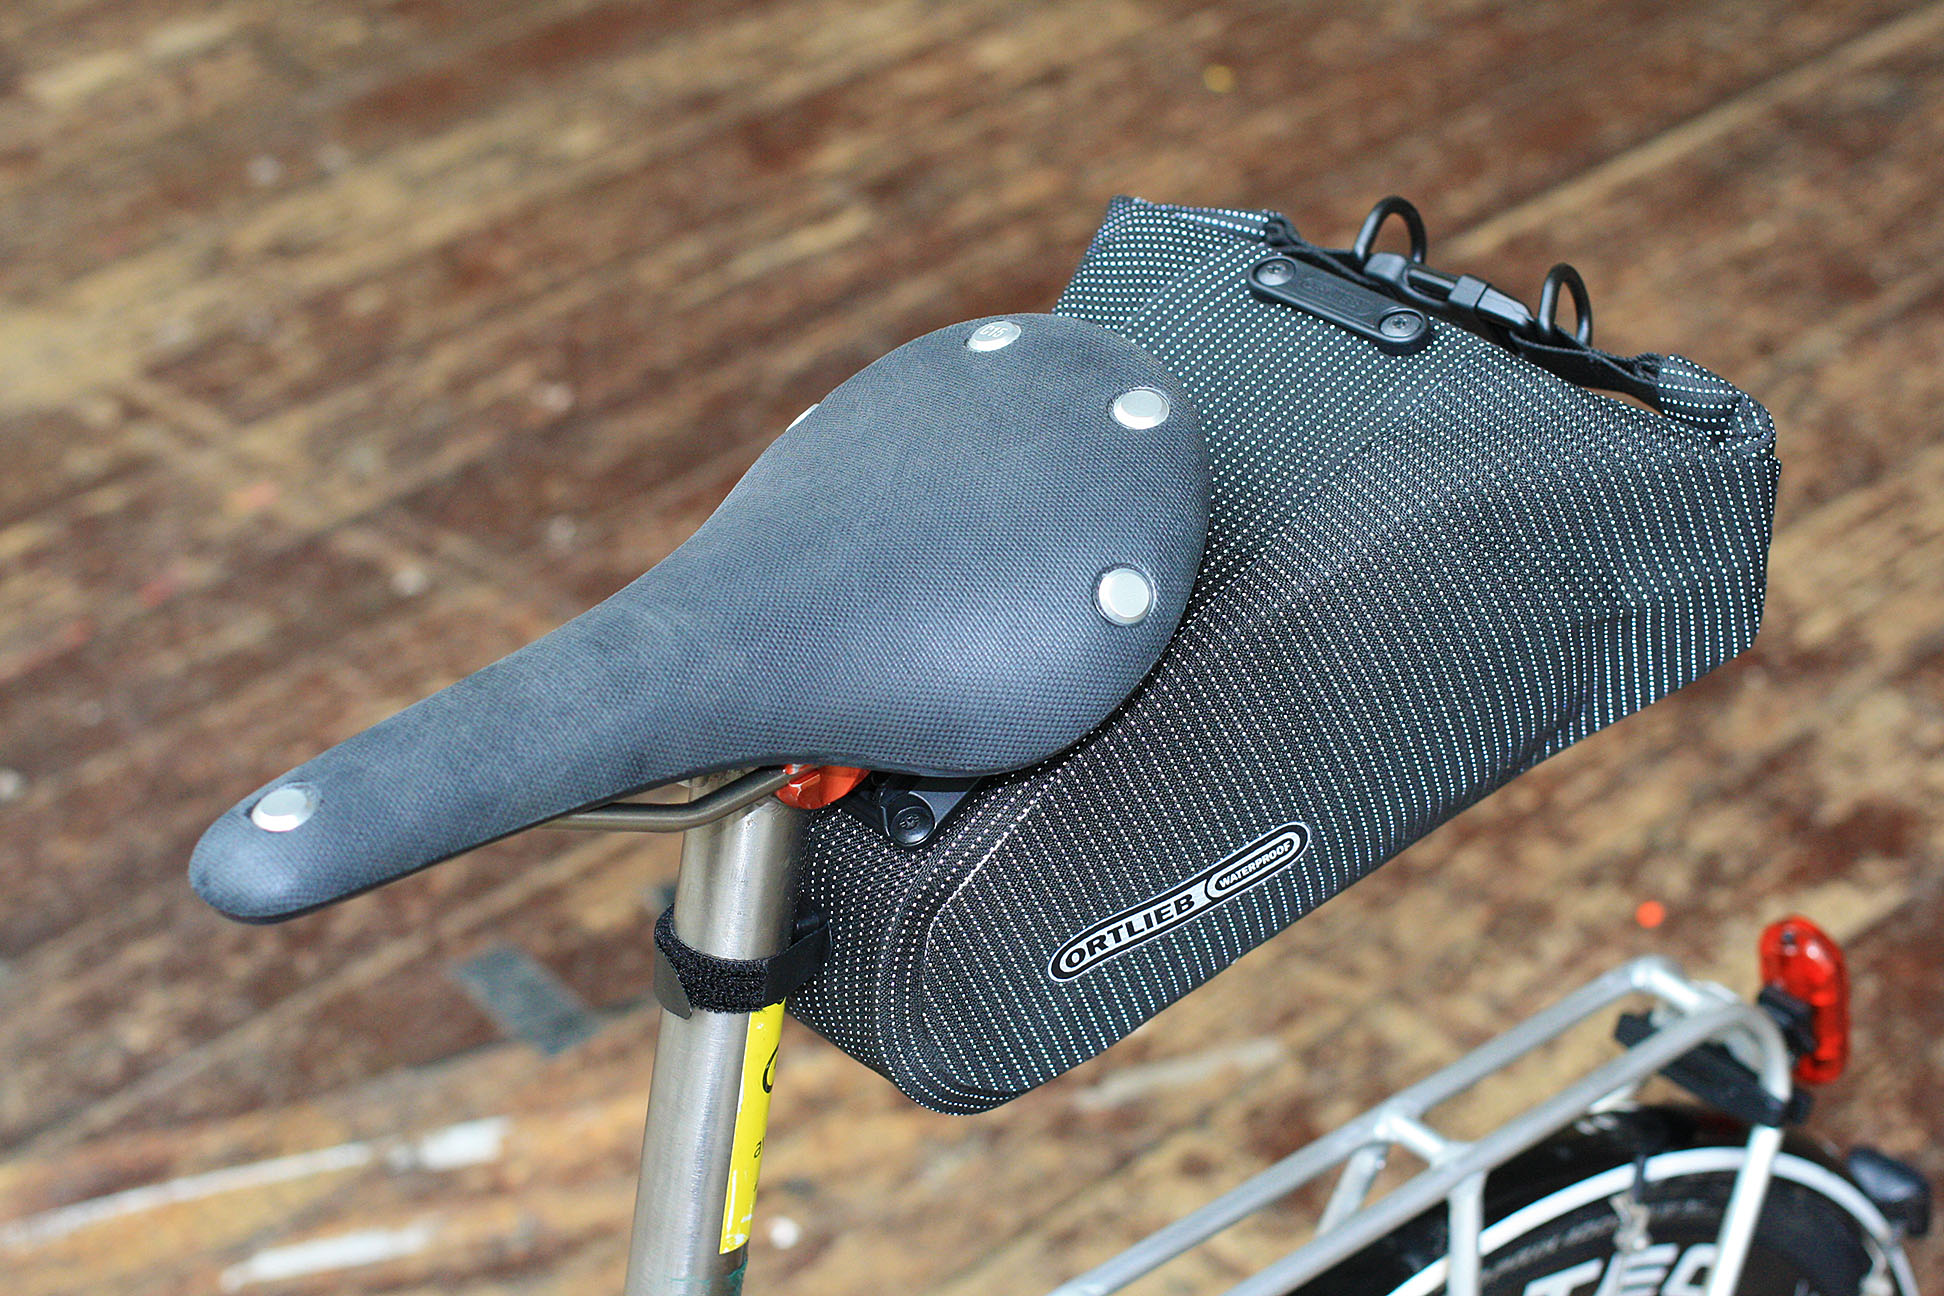 ortlieb waterproof saddle bag